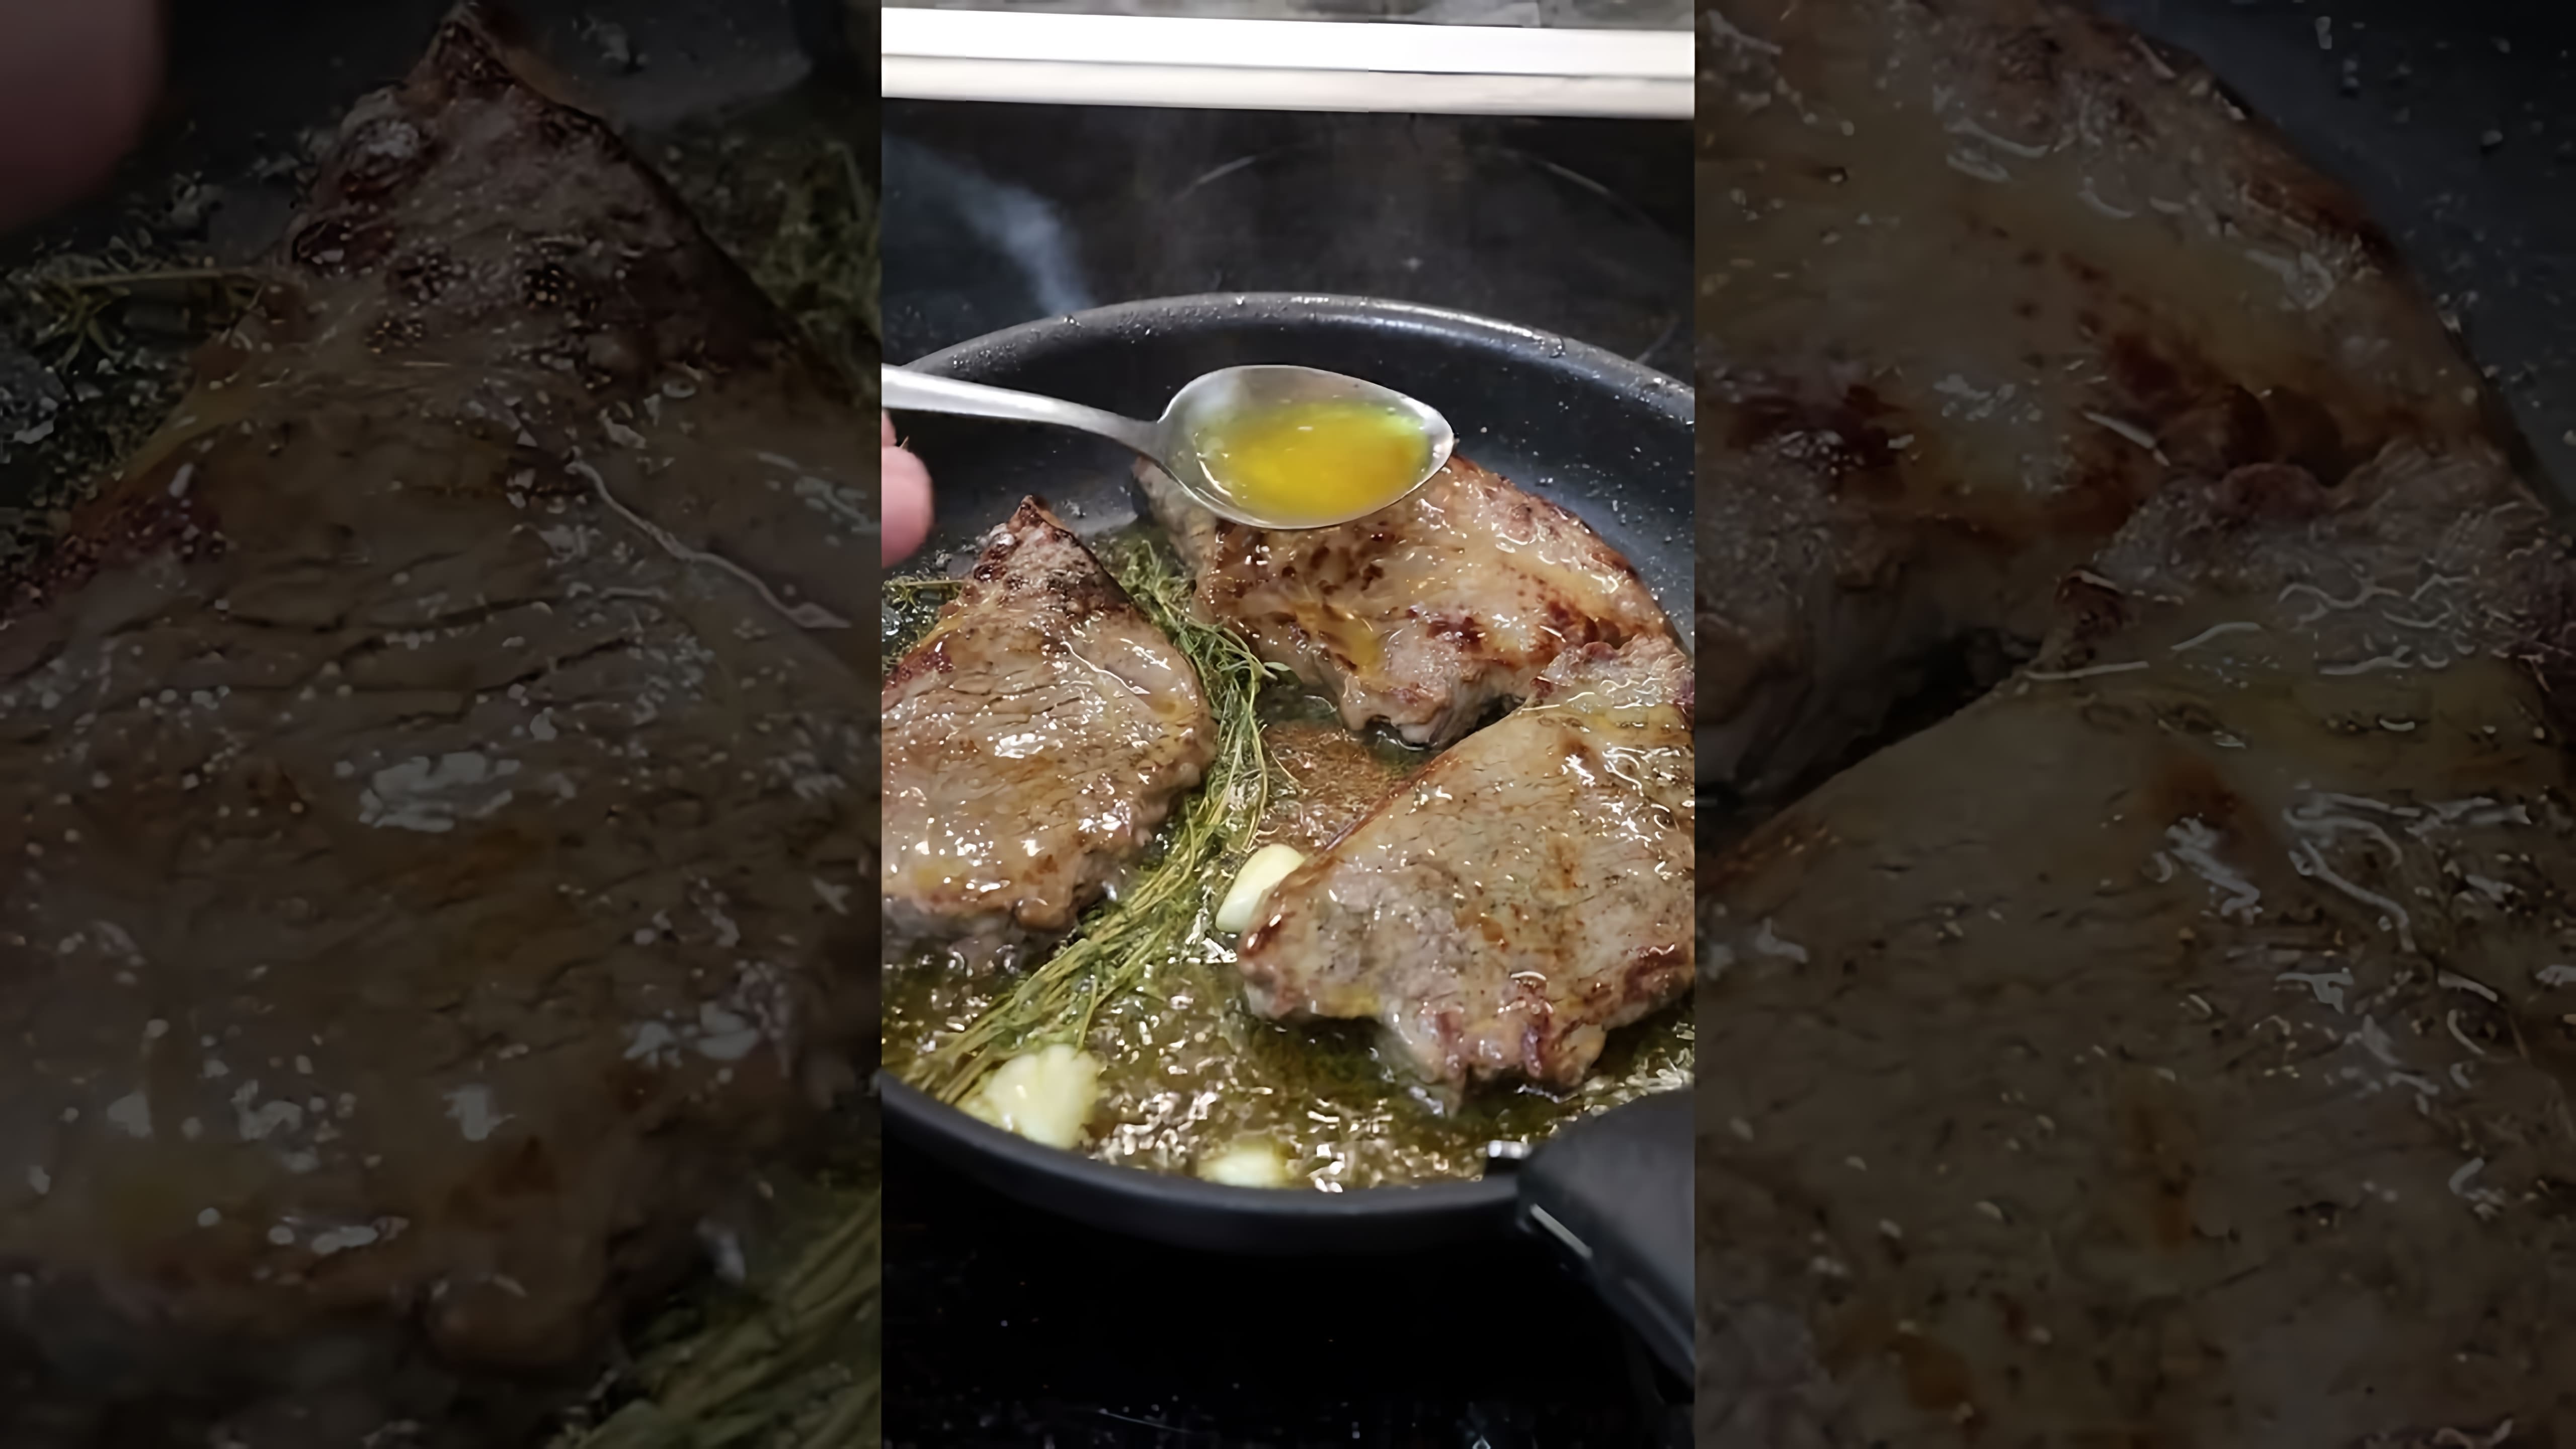 В этом видео-ролике мы увидим, как приготовить вкусный и сочный праздничный стейк, который будет вкуснее, чем в ресторане